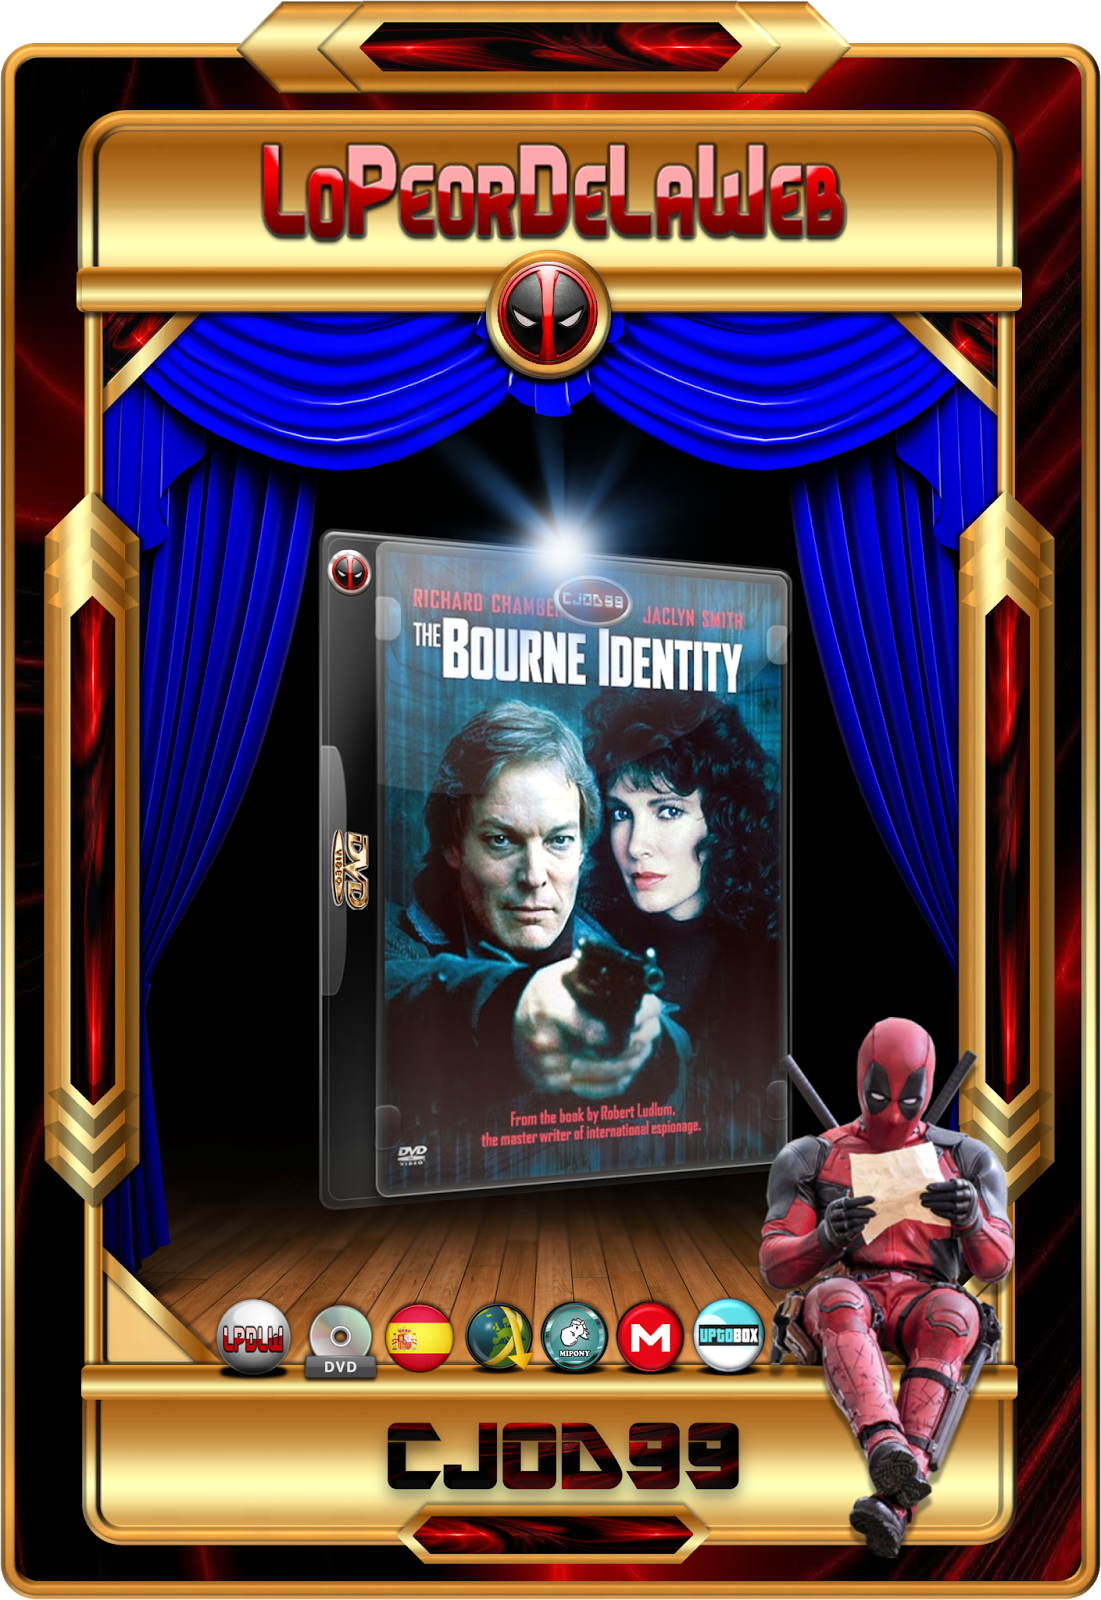 Saga Jason Bourne 1080p Dual 6 Películas 3 Novelas